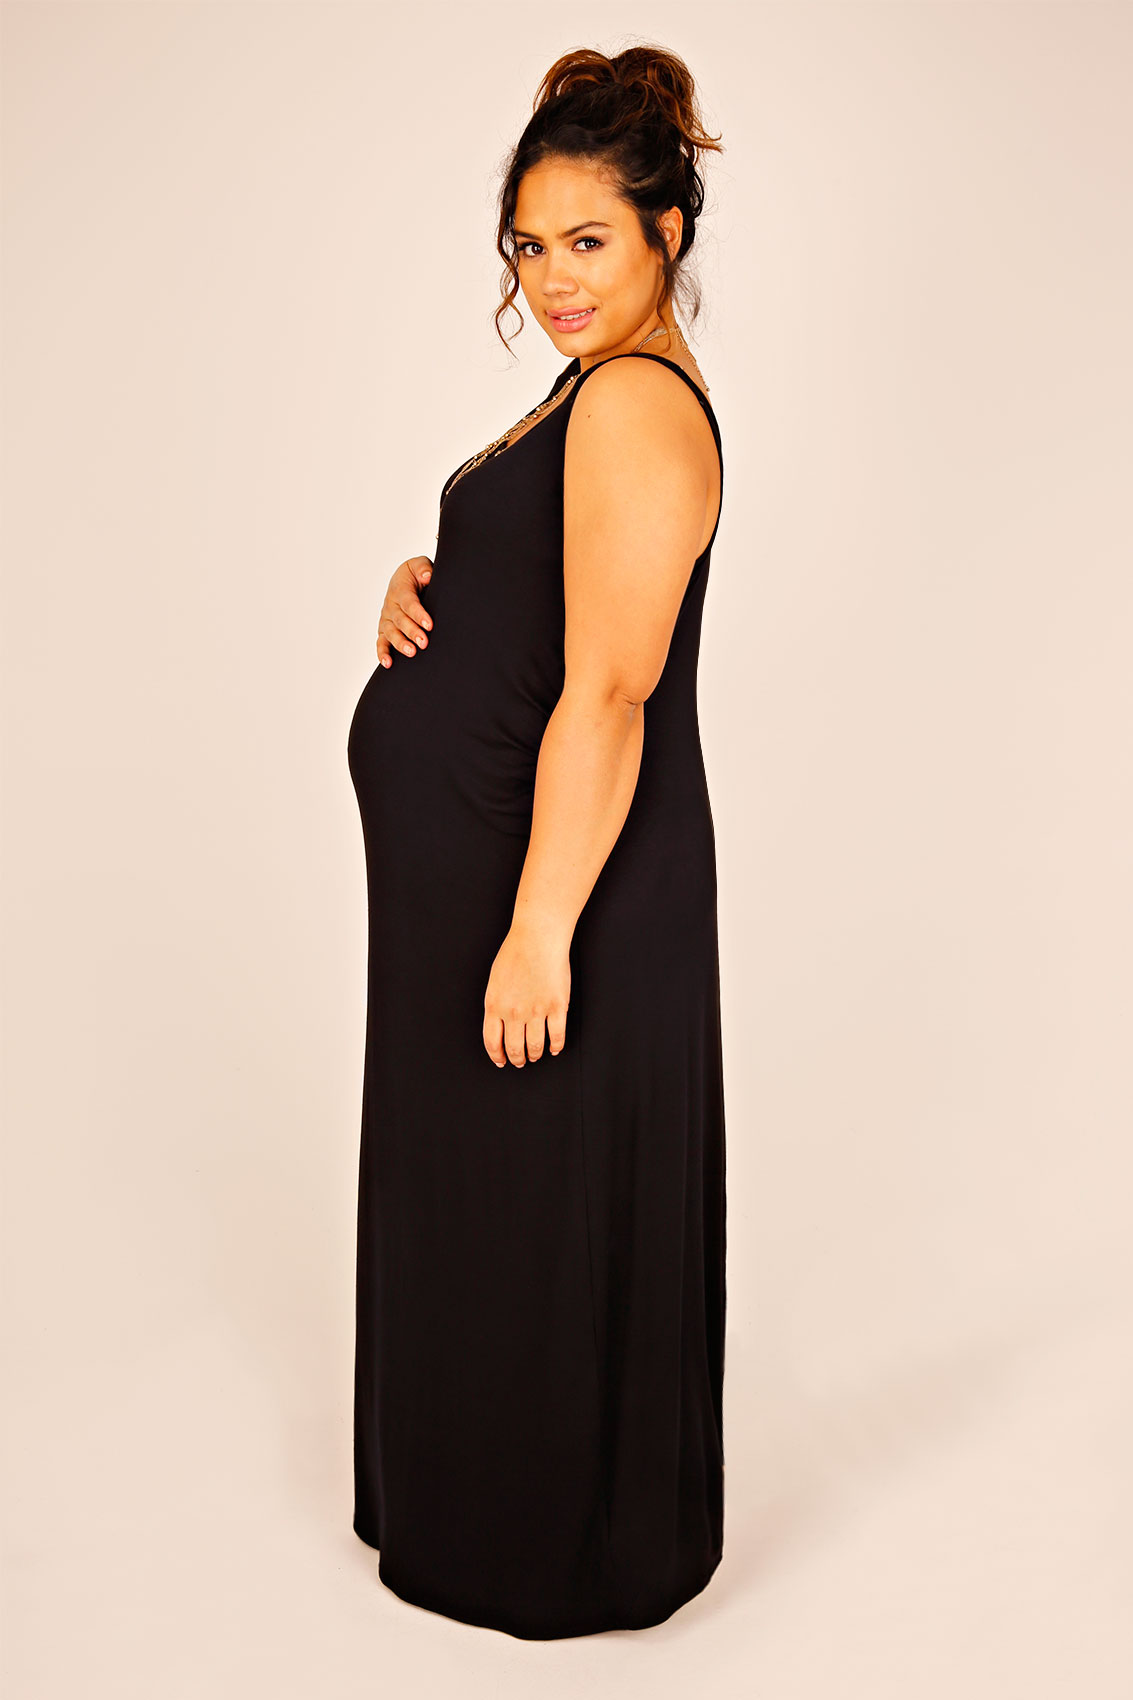 Plus Size Maternity Clothing | Yours Clothing